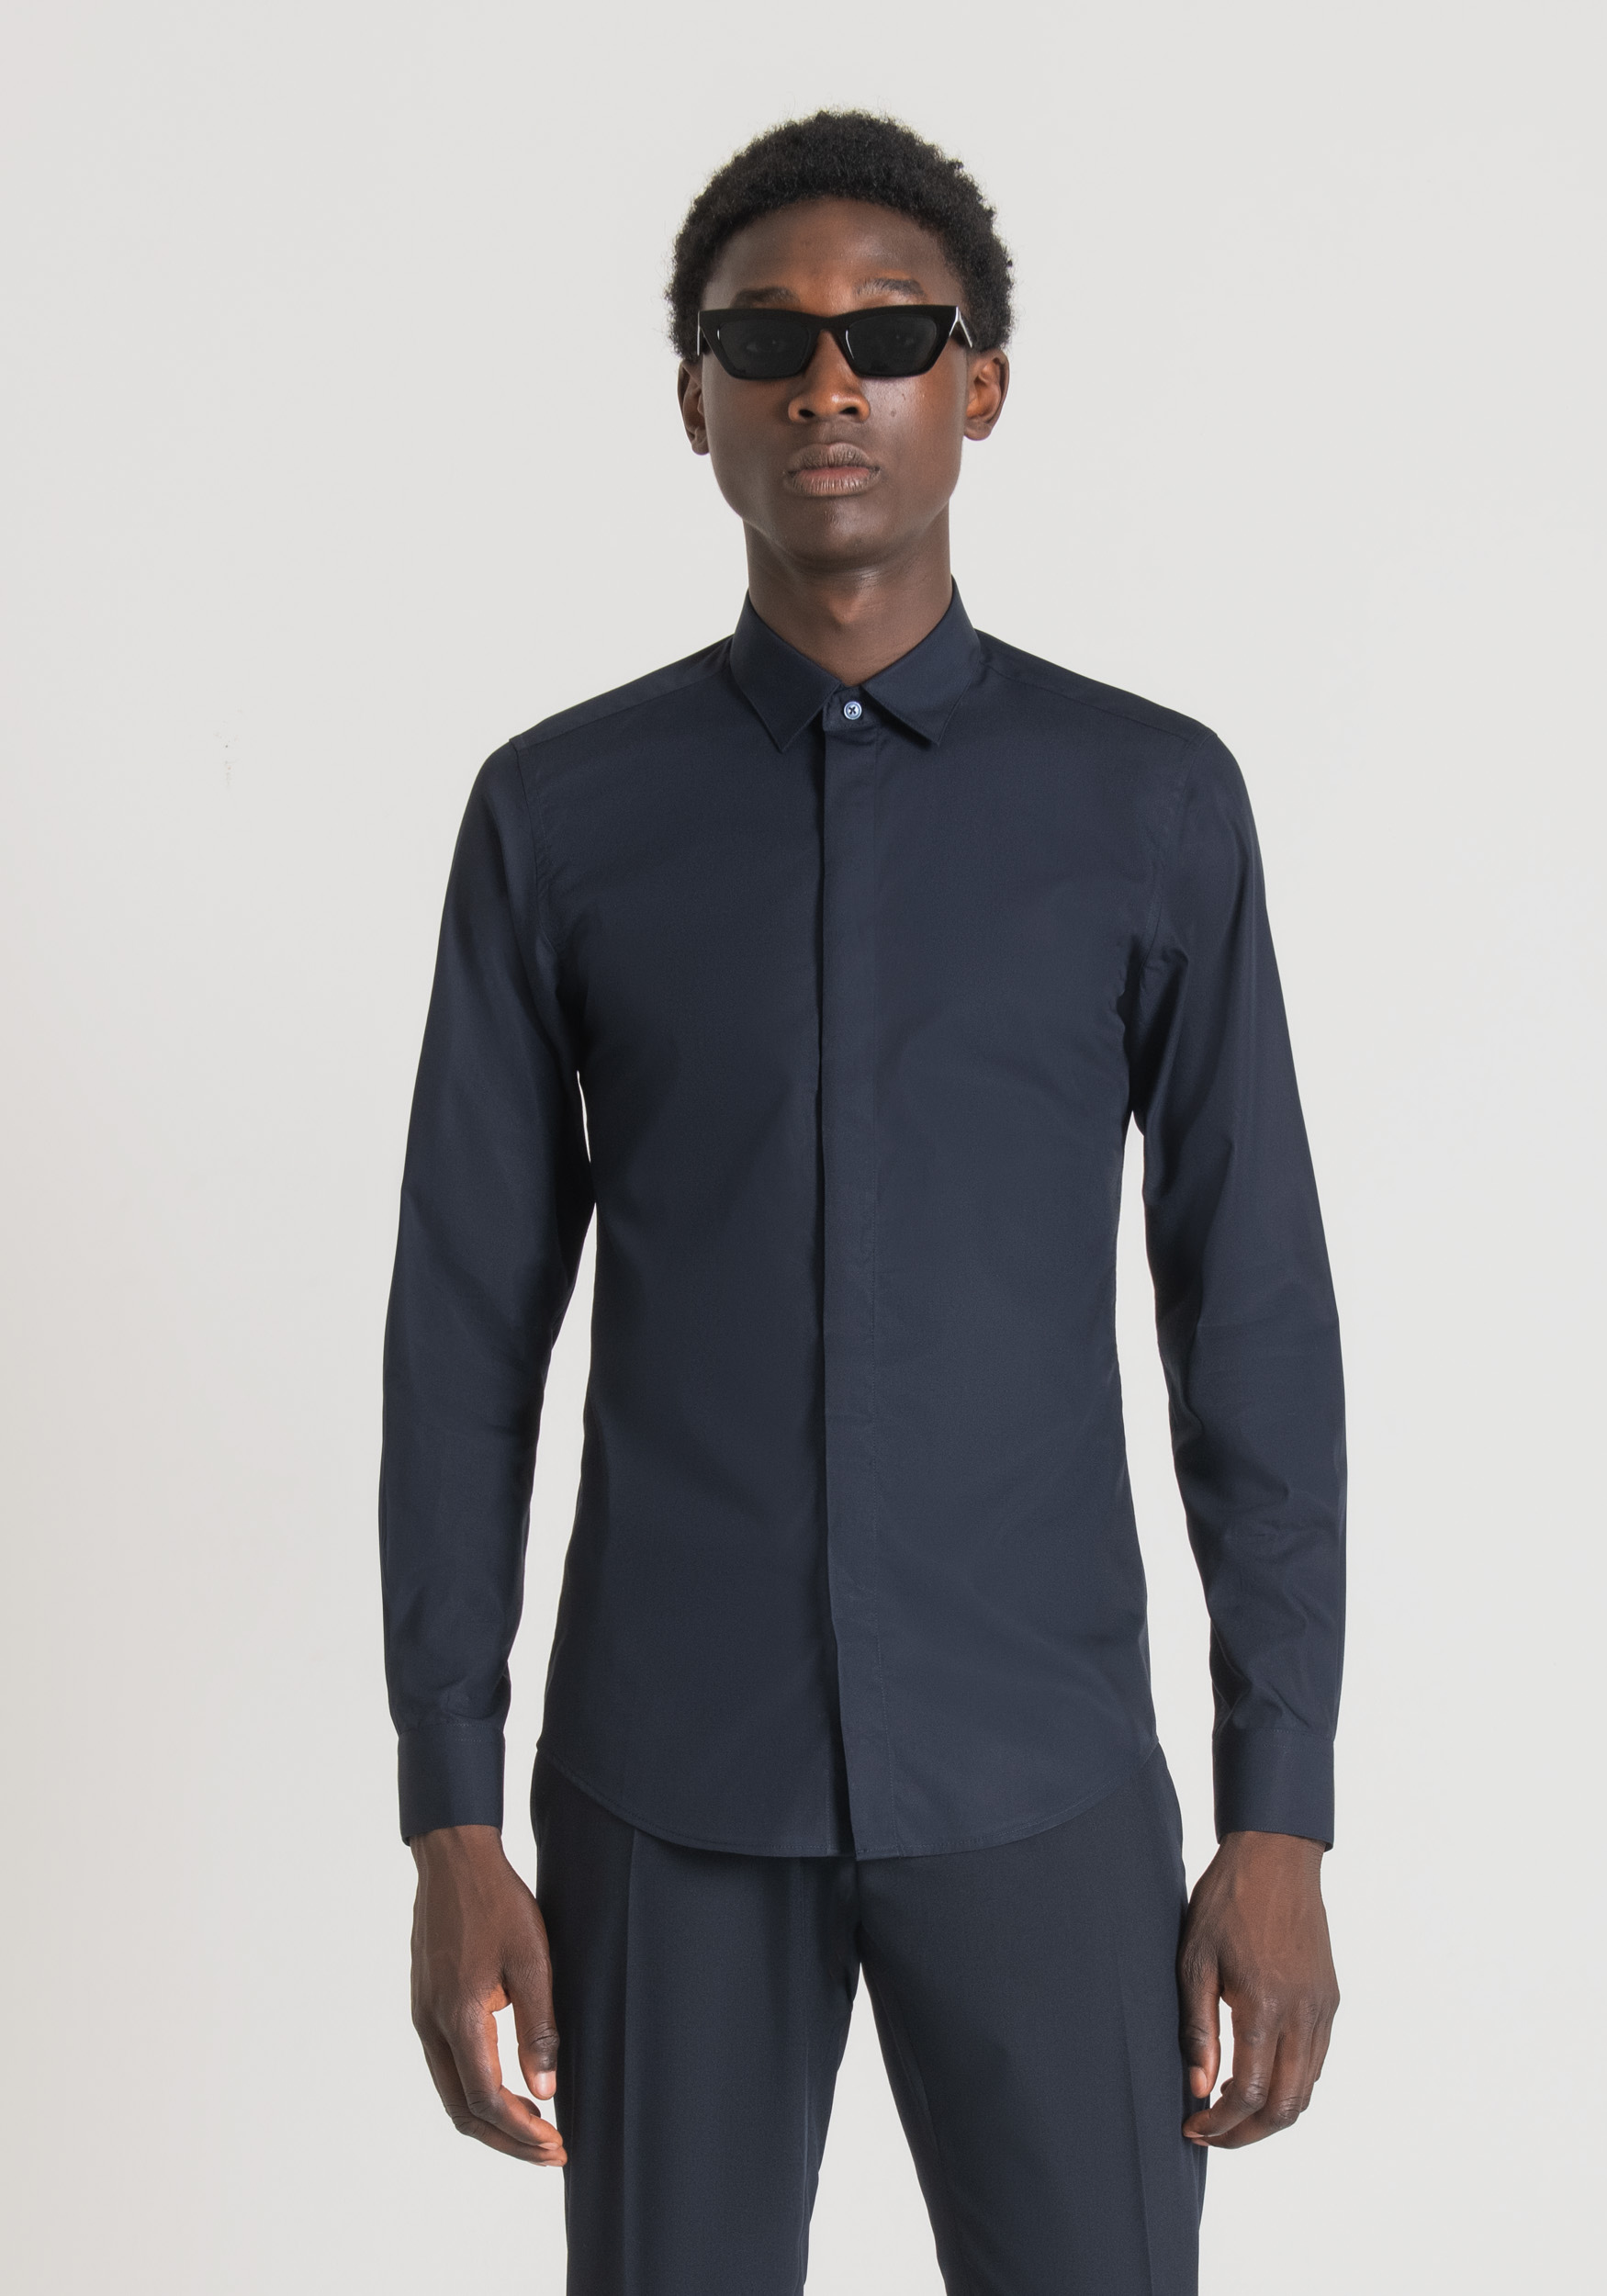 Antony Morato Chemise Slim Fit 'London' En Coton, Facile A Repasser, Avec Patte De Boutonnage Dissimulee Encre Bleu | Homme Chemises